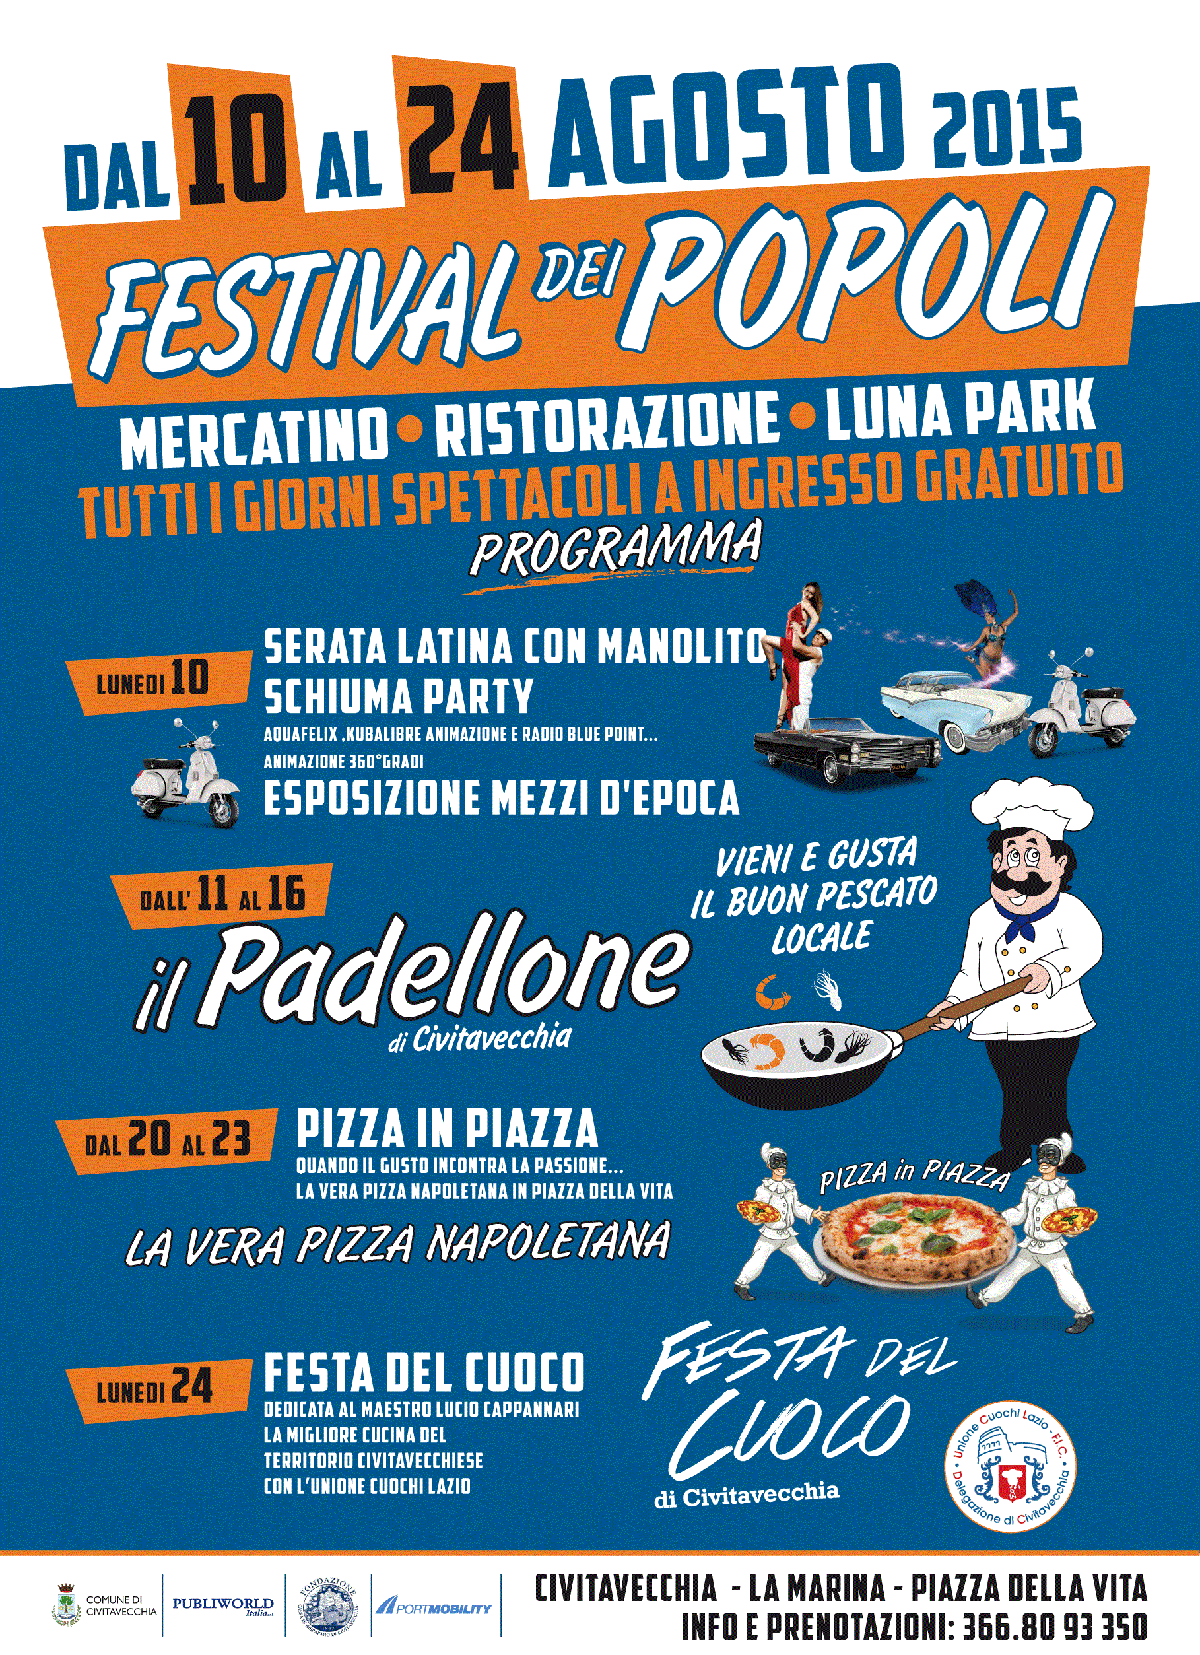 El póster del Festival dei Popoli 2015 en Civitavecchia